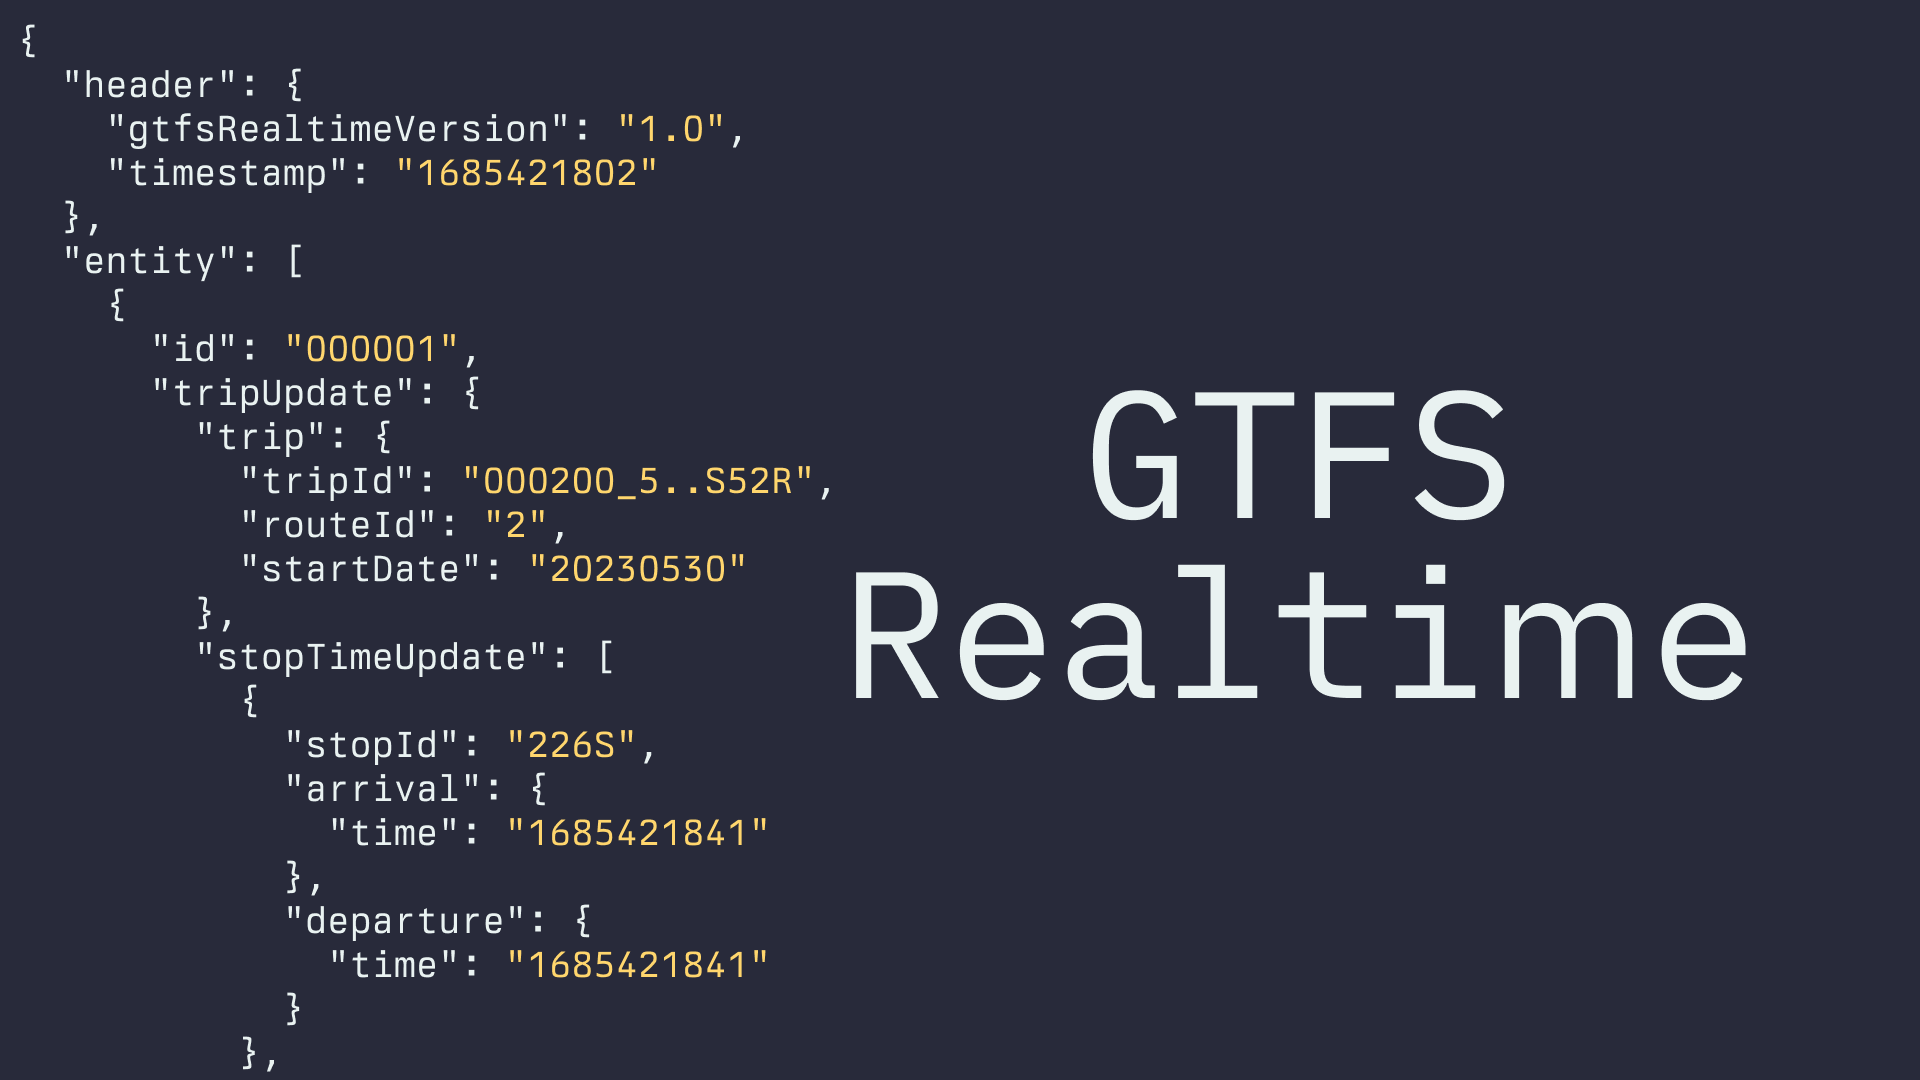 GTFS Realtime